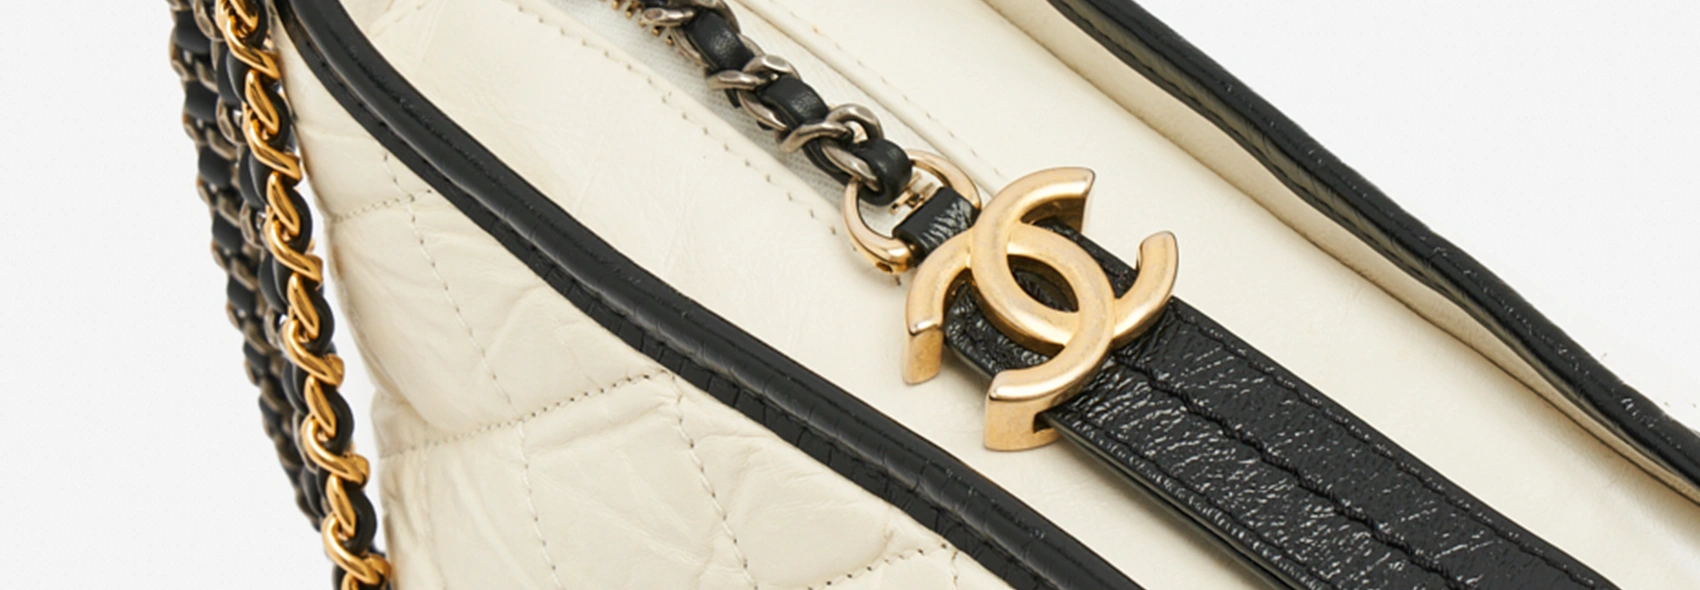 Alles über die Chanel Gabrielle Bag